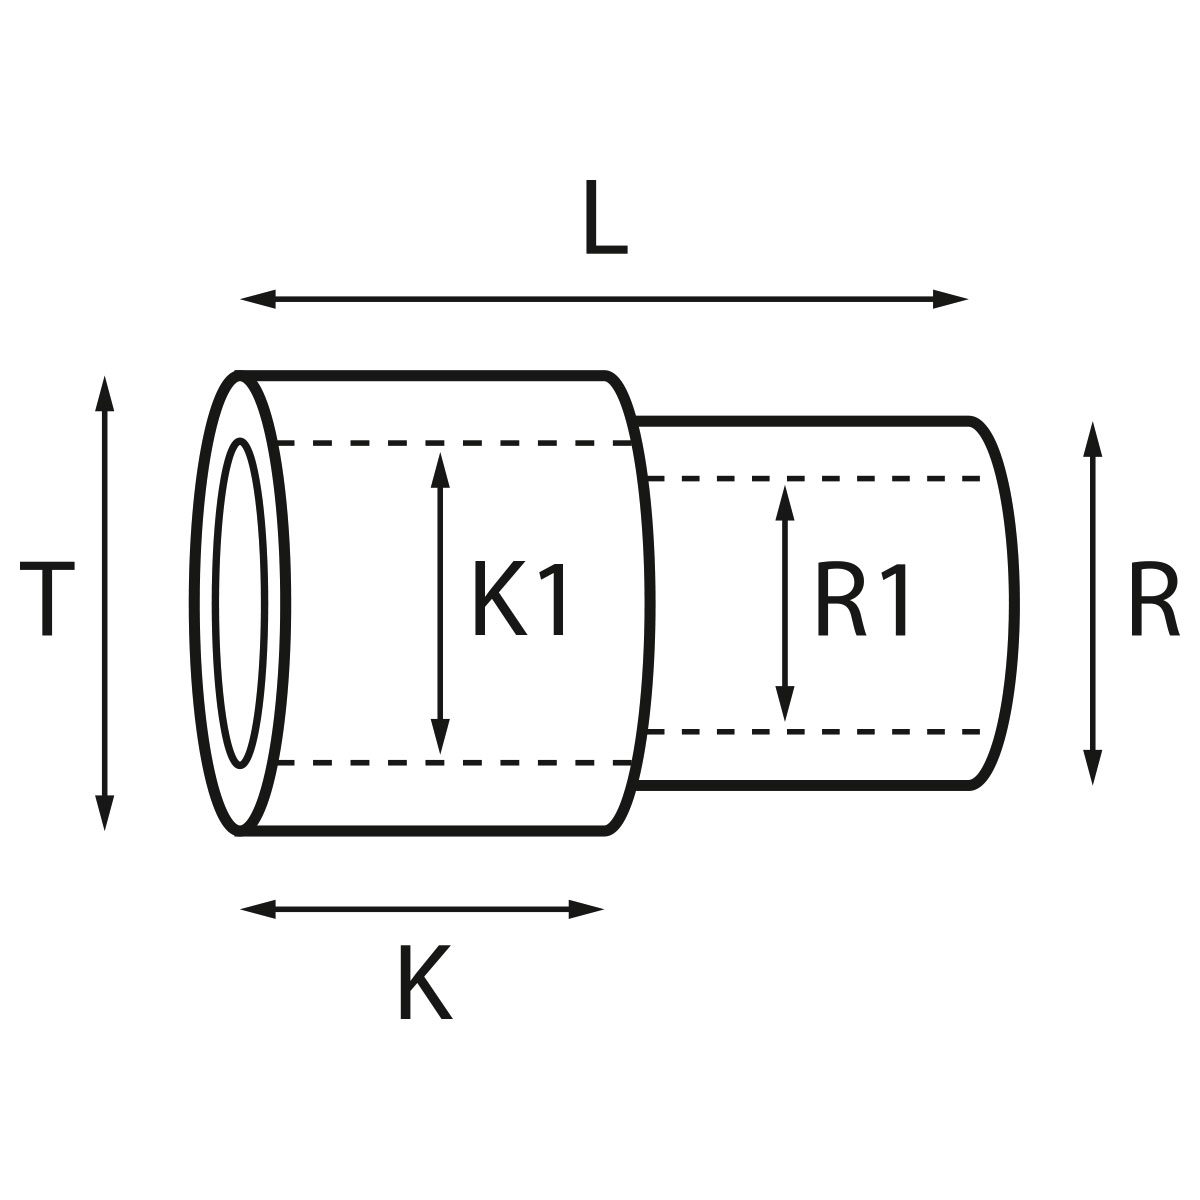 Gehäusetube Typ AS 13827, Tubus Ø 2,5 mm, Gesamtlänge 4,35 mm, für wasserdichte Kronen